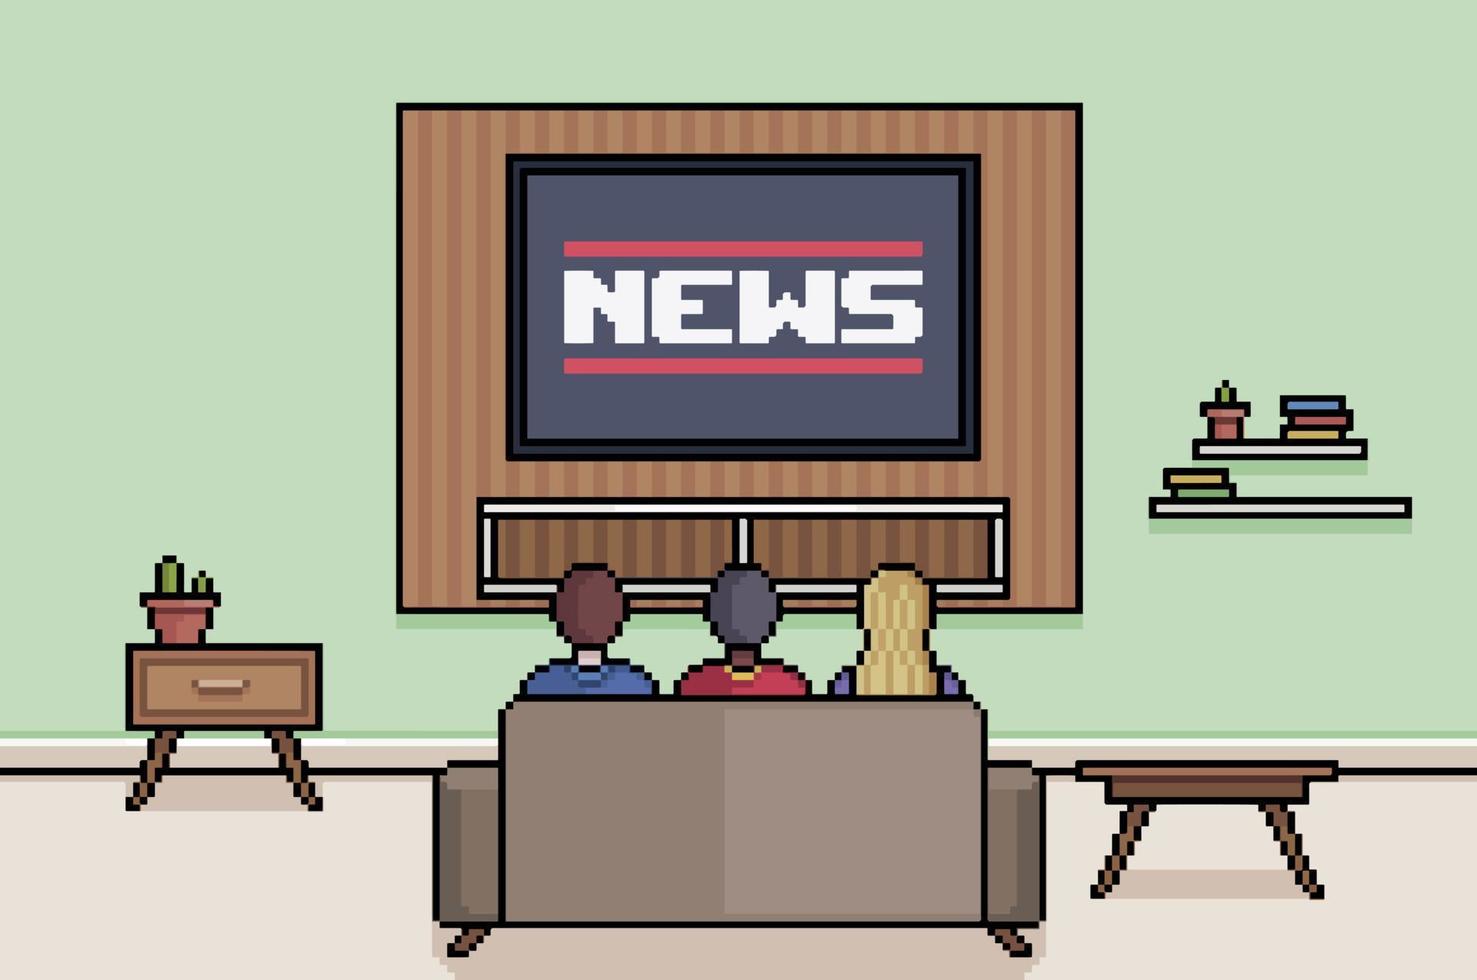 pixel art pessoas assistindo notícias na sala de tv vetor de plano de fundo do jogo de 8 bits